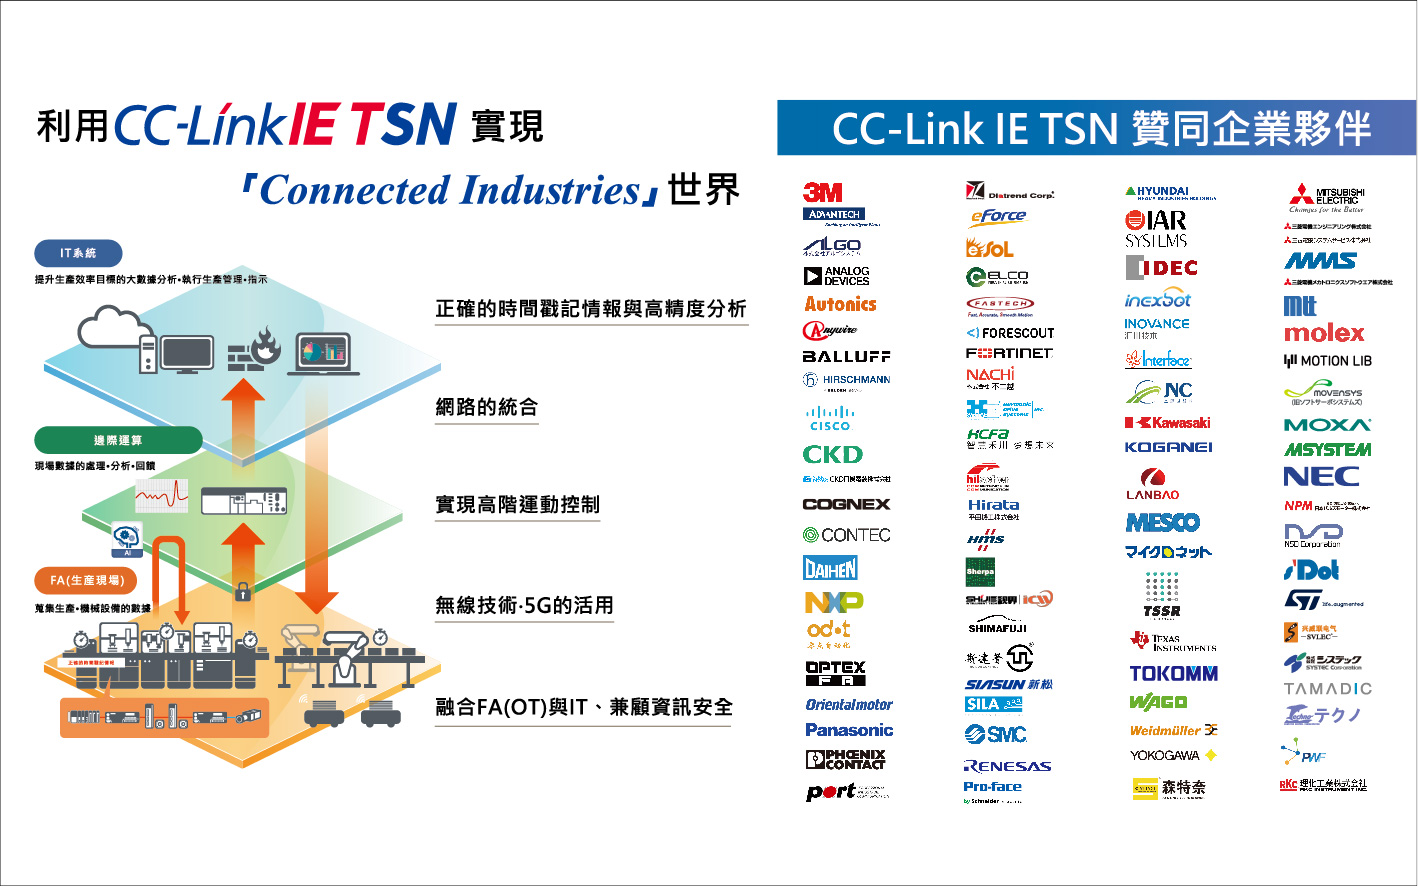 整合IT與OT的CC-Link IE TSN夥伴群